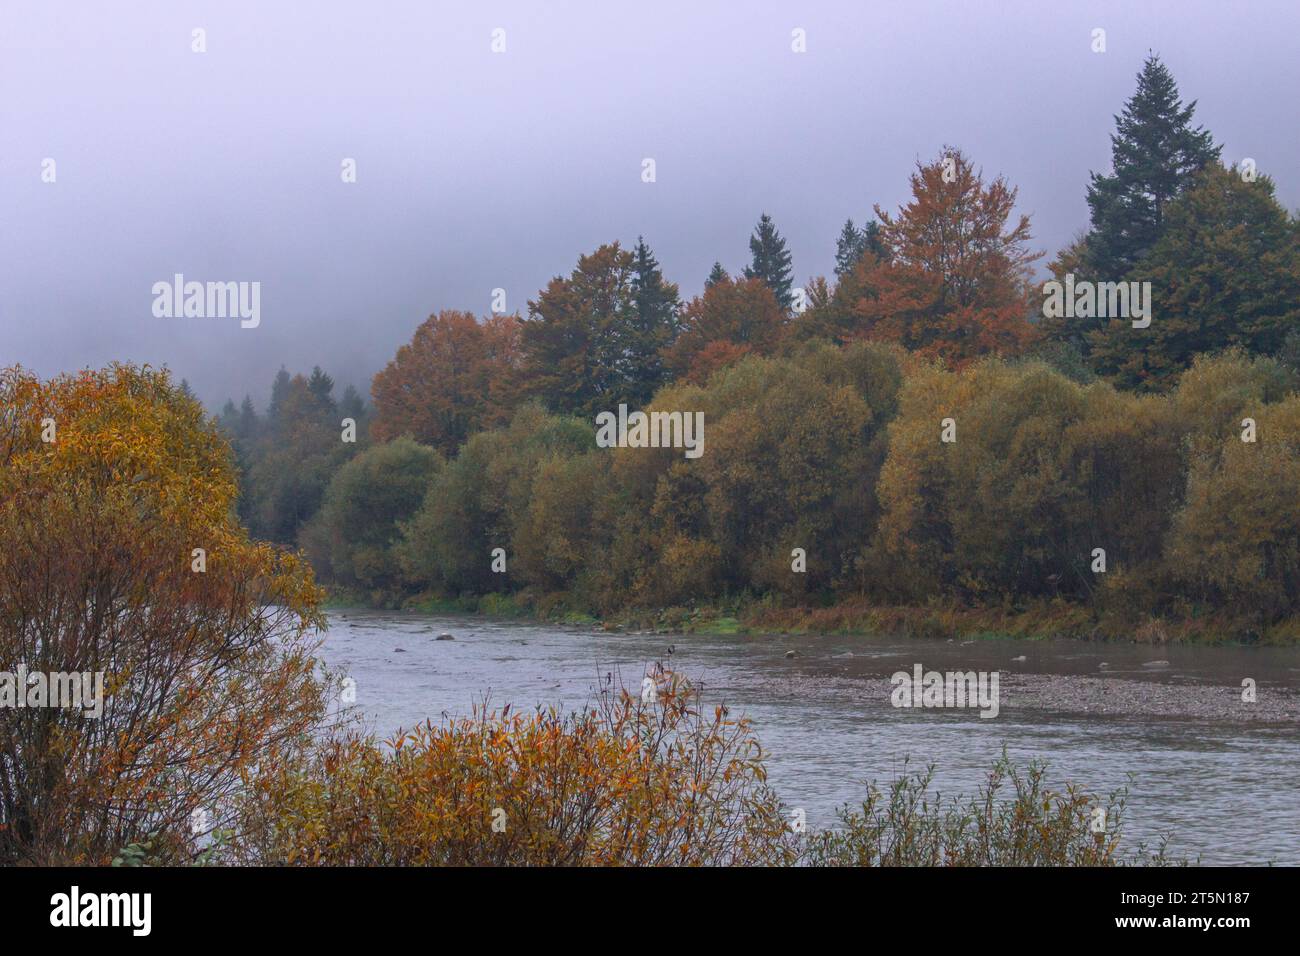 Nebel auf dem Fluss in Herbstbergen. Frostiger Morgen in den Bergen am Flussufer. Ruhige Herbstlandschaft mit Fluss. Malerische nebelige Landschaft. Stockfoto